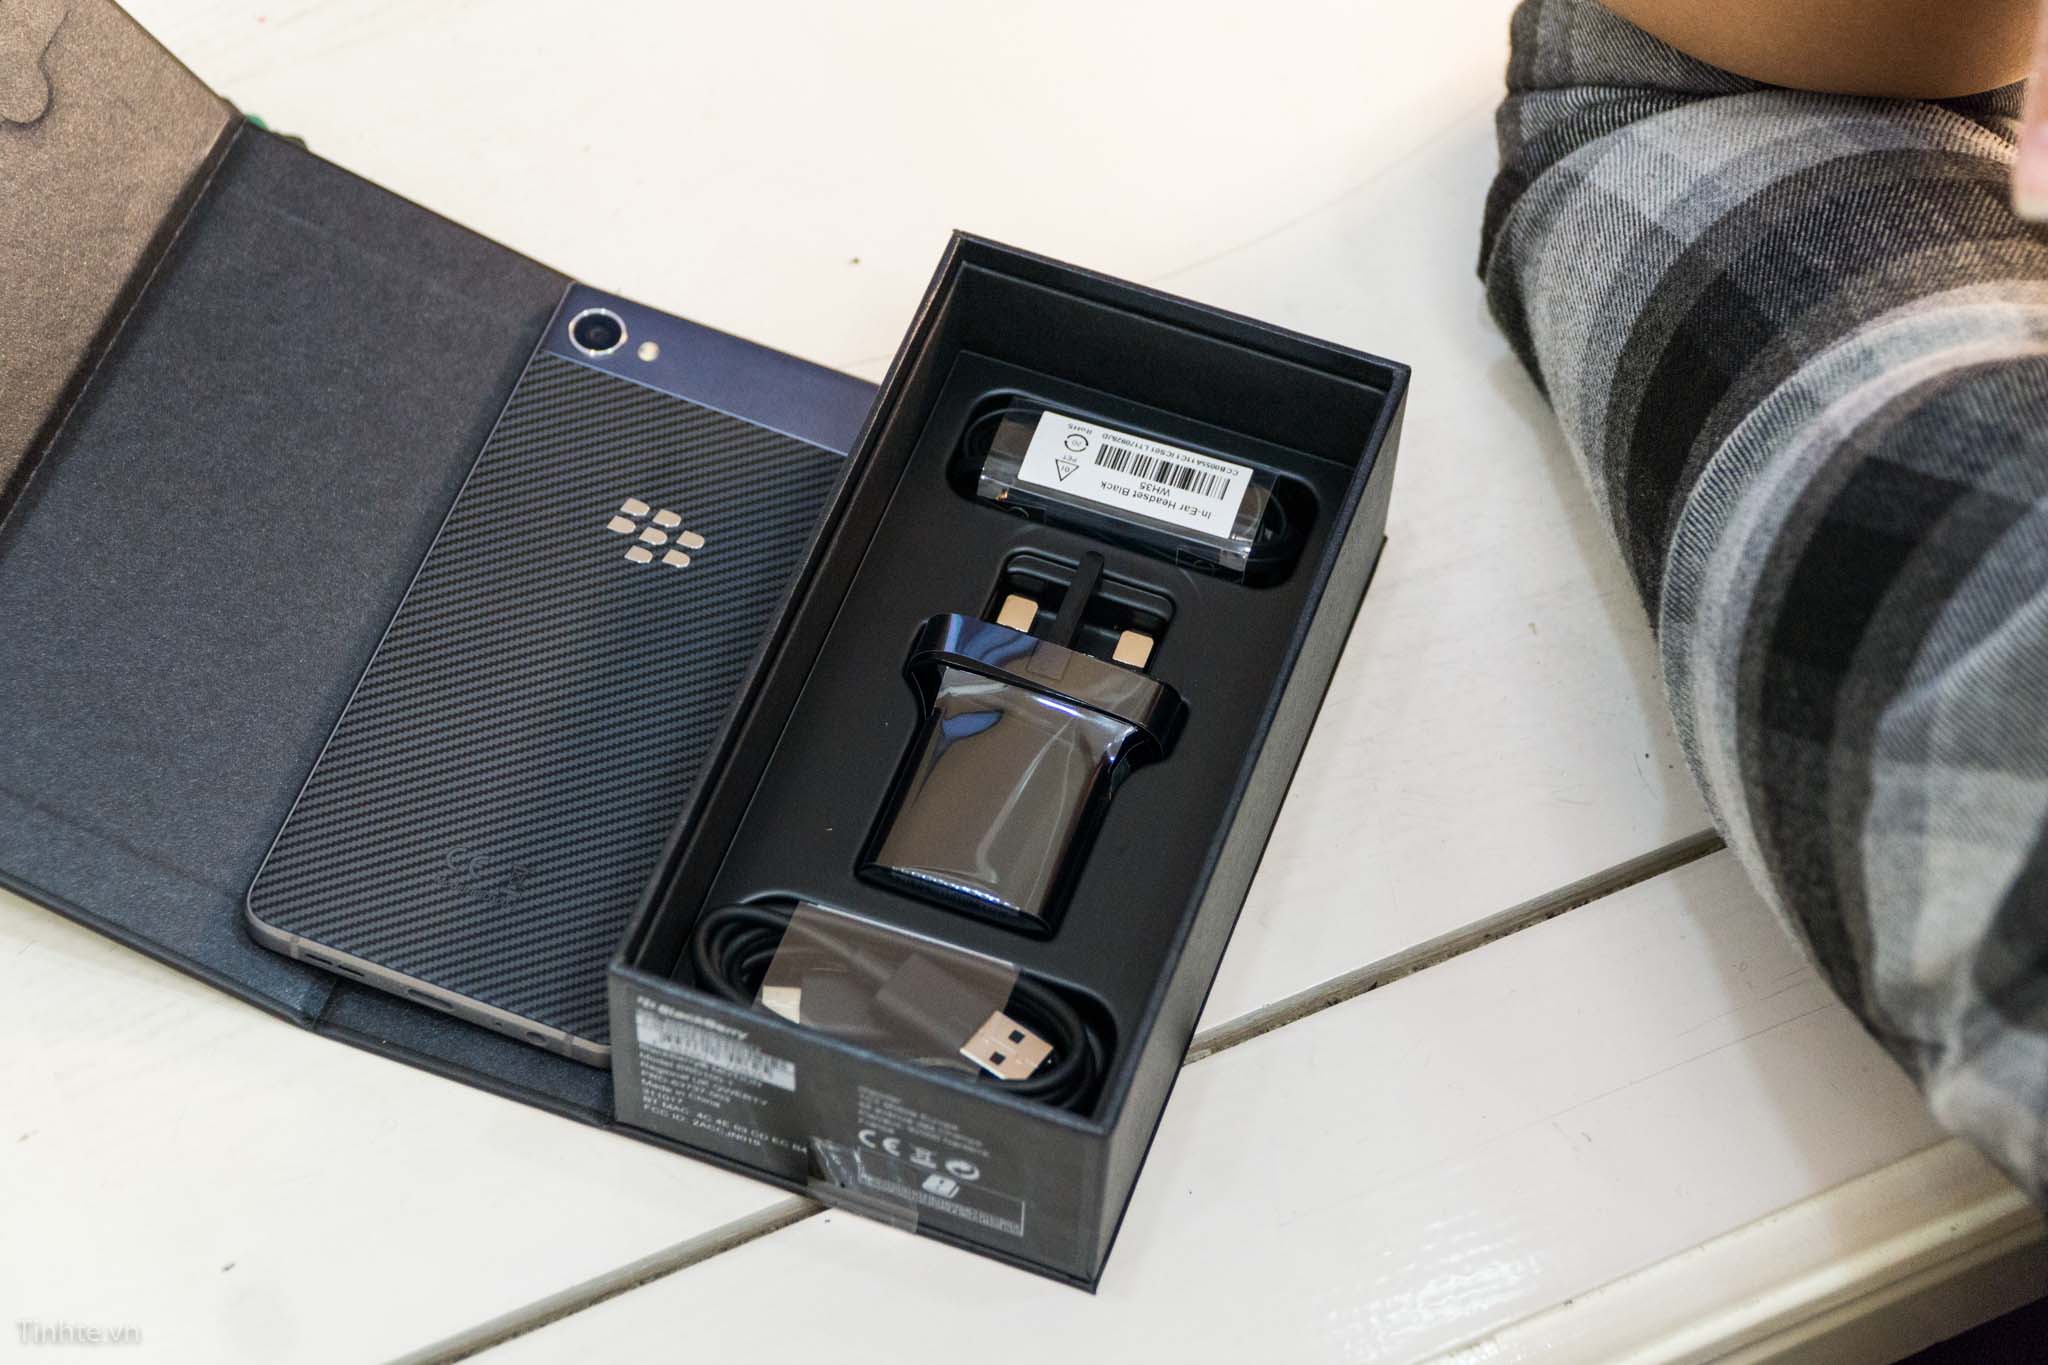 Trên
tay BlackBerry Motion: CPU/RAM như KeyOne, có chống nước,
pin 4000mAh